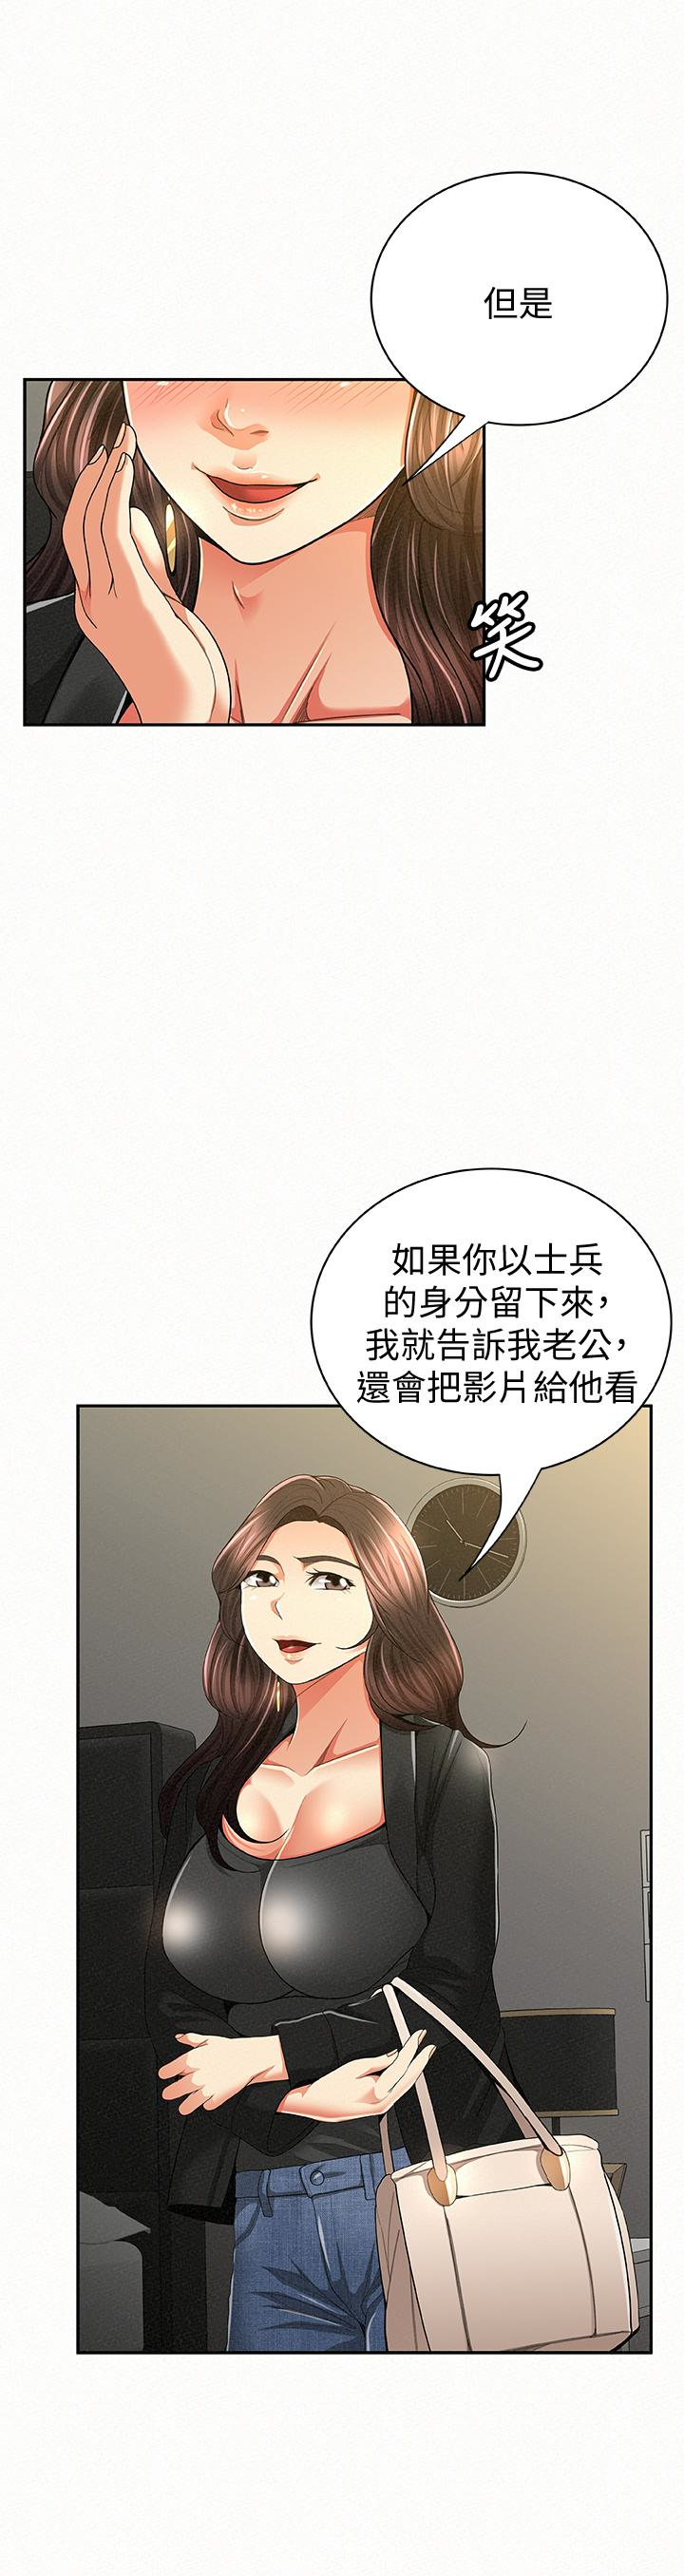 韩国污漫画 報告夫人 第40话-最后来一炮吧? 10